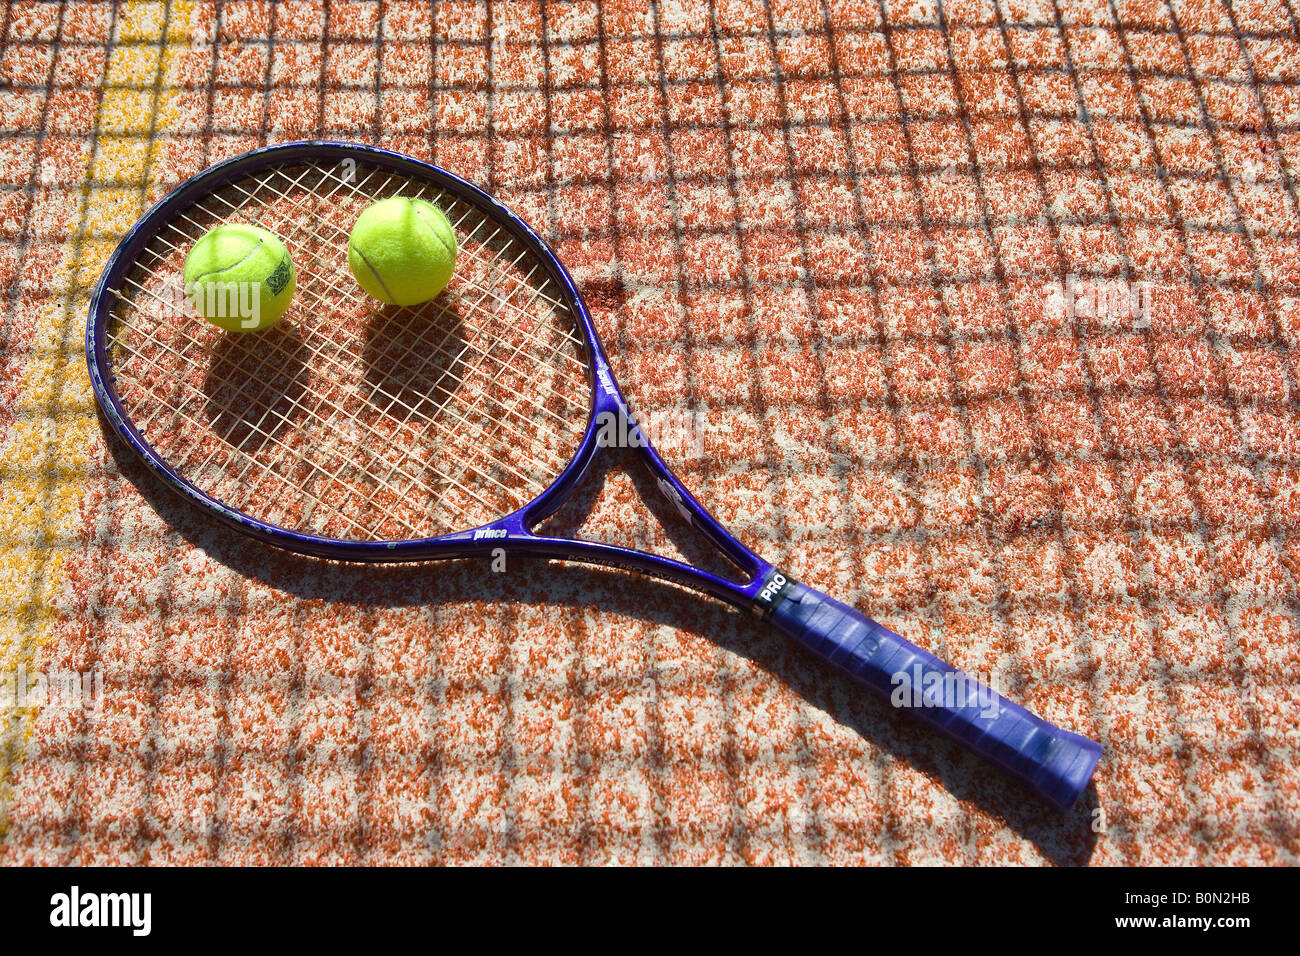 Court de tennis. Une raquette de tennis et de boules. Banque D'Images